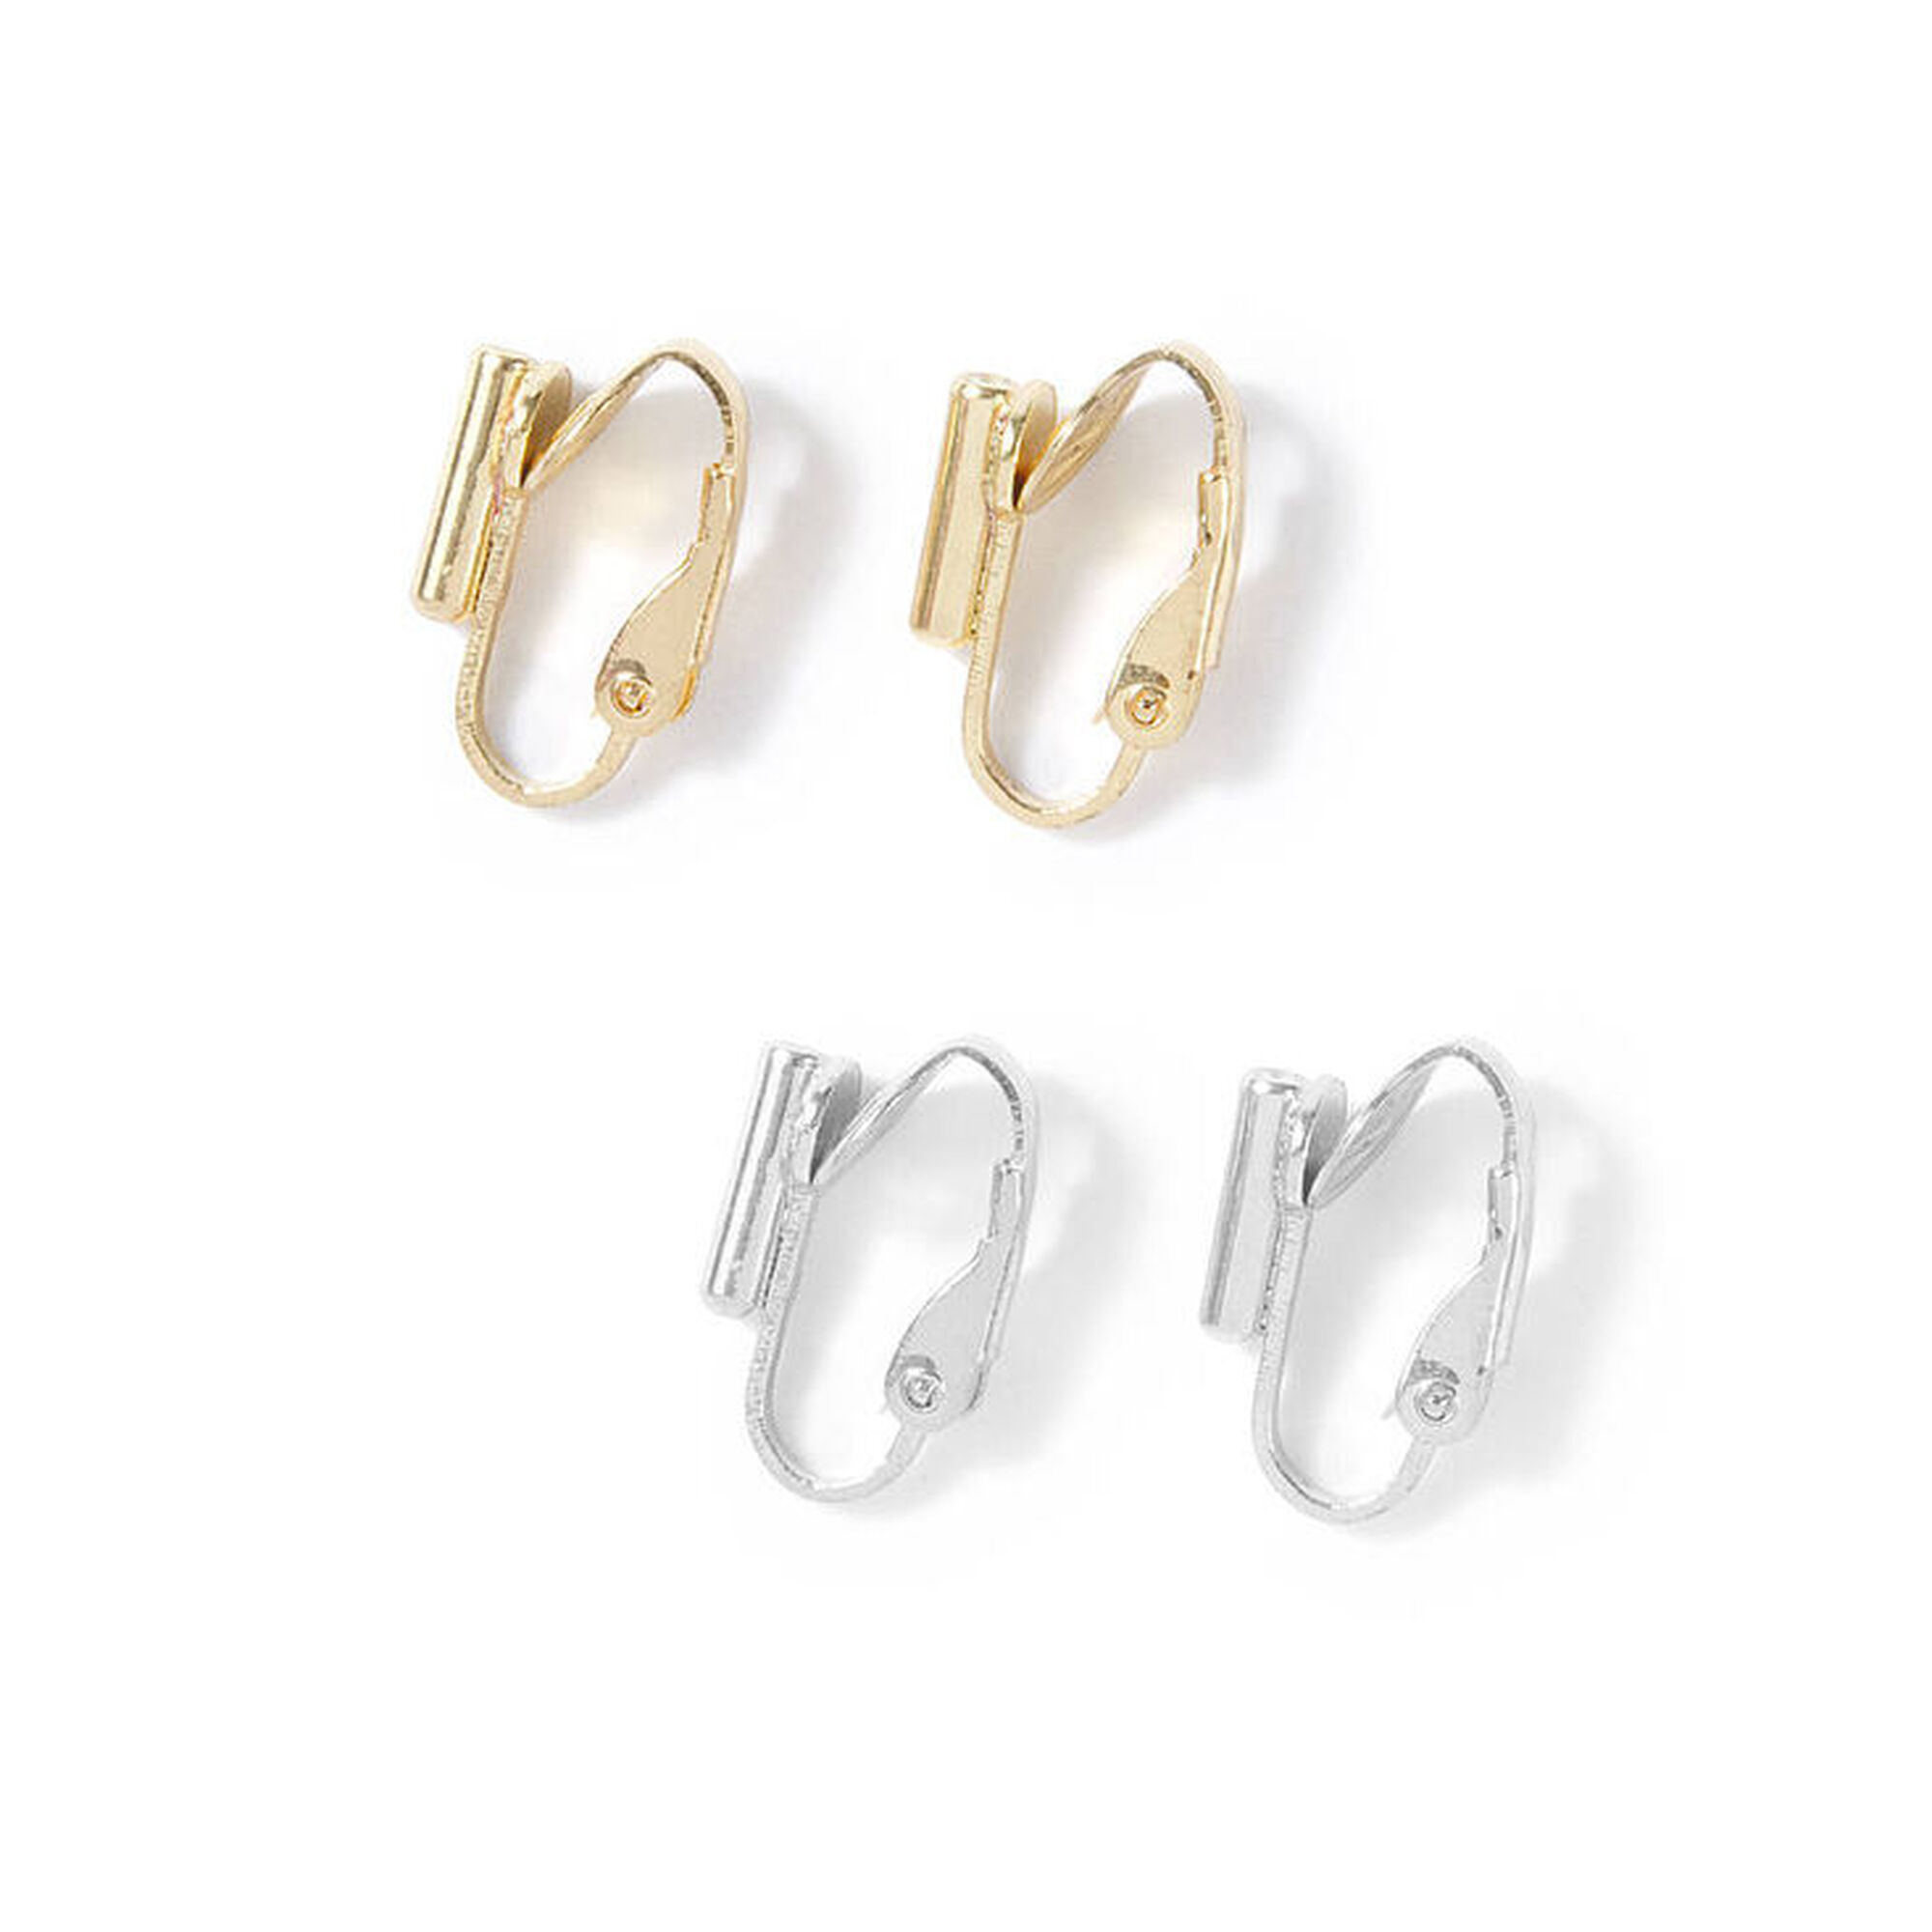 36pcs Clip-on Earrings Converter DIY Ear Jewelry Accessory for None Pierced  Ear | eBay